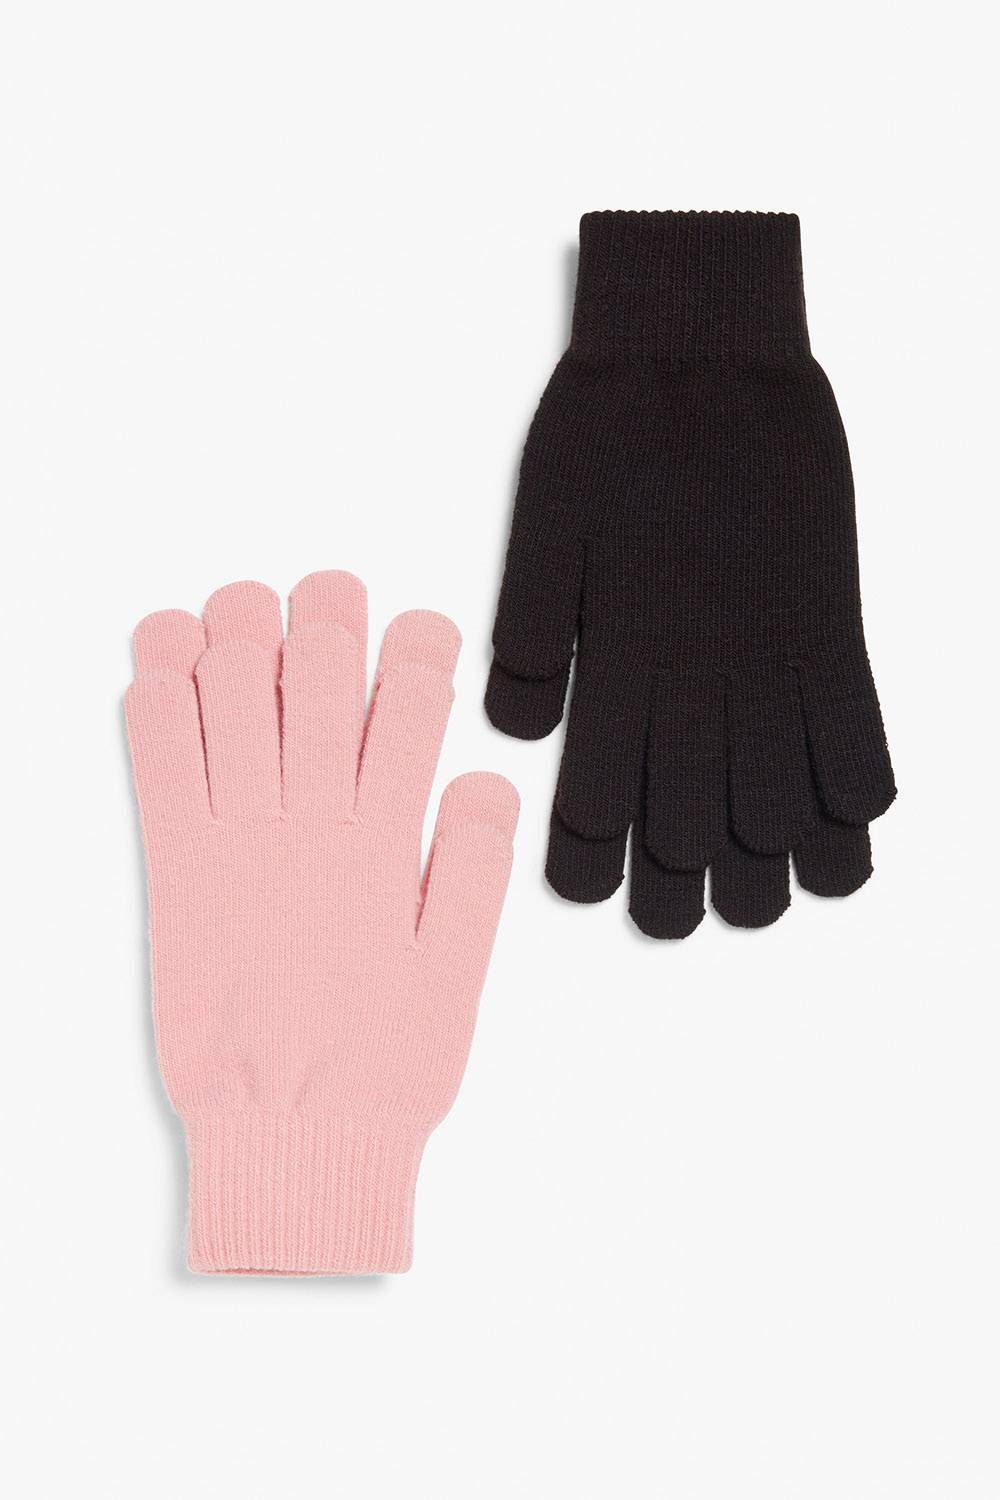 monki cheap vegan winter gloves